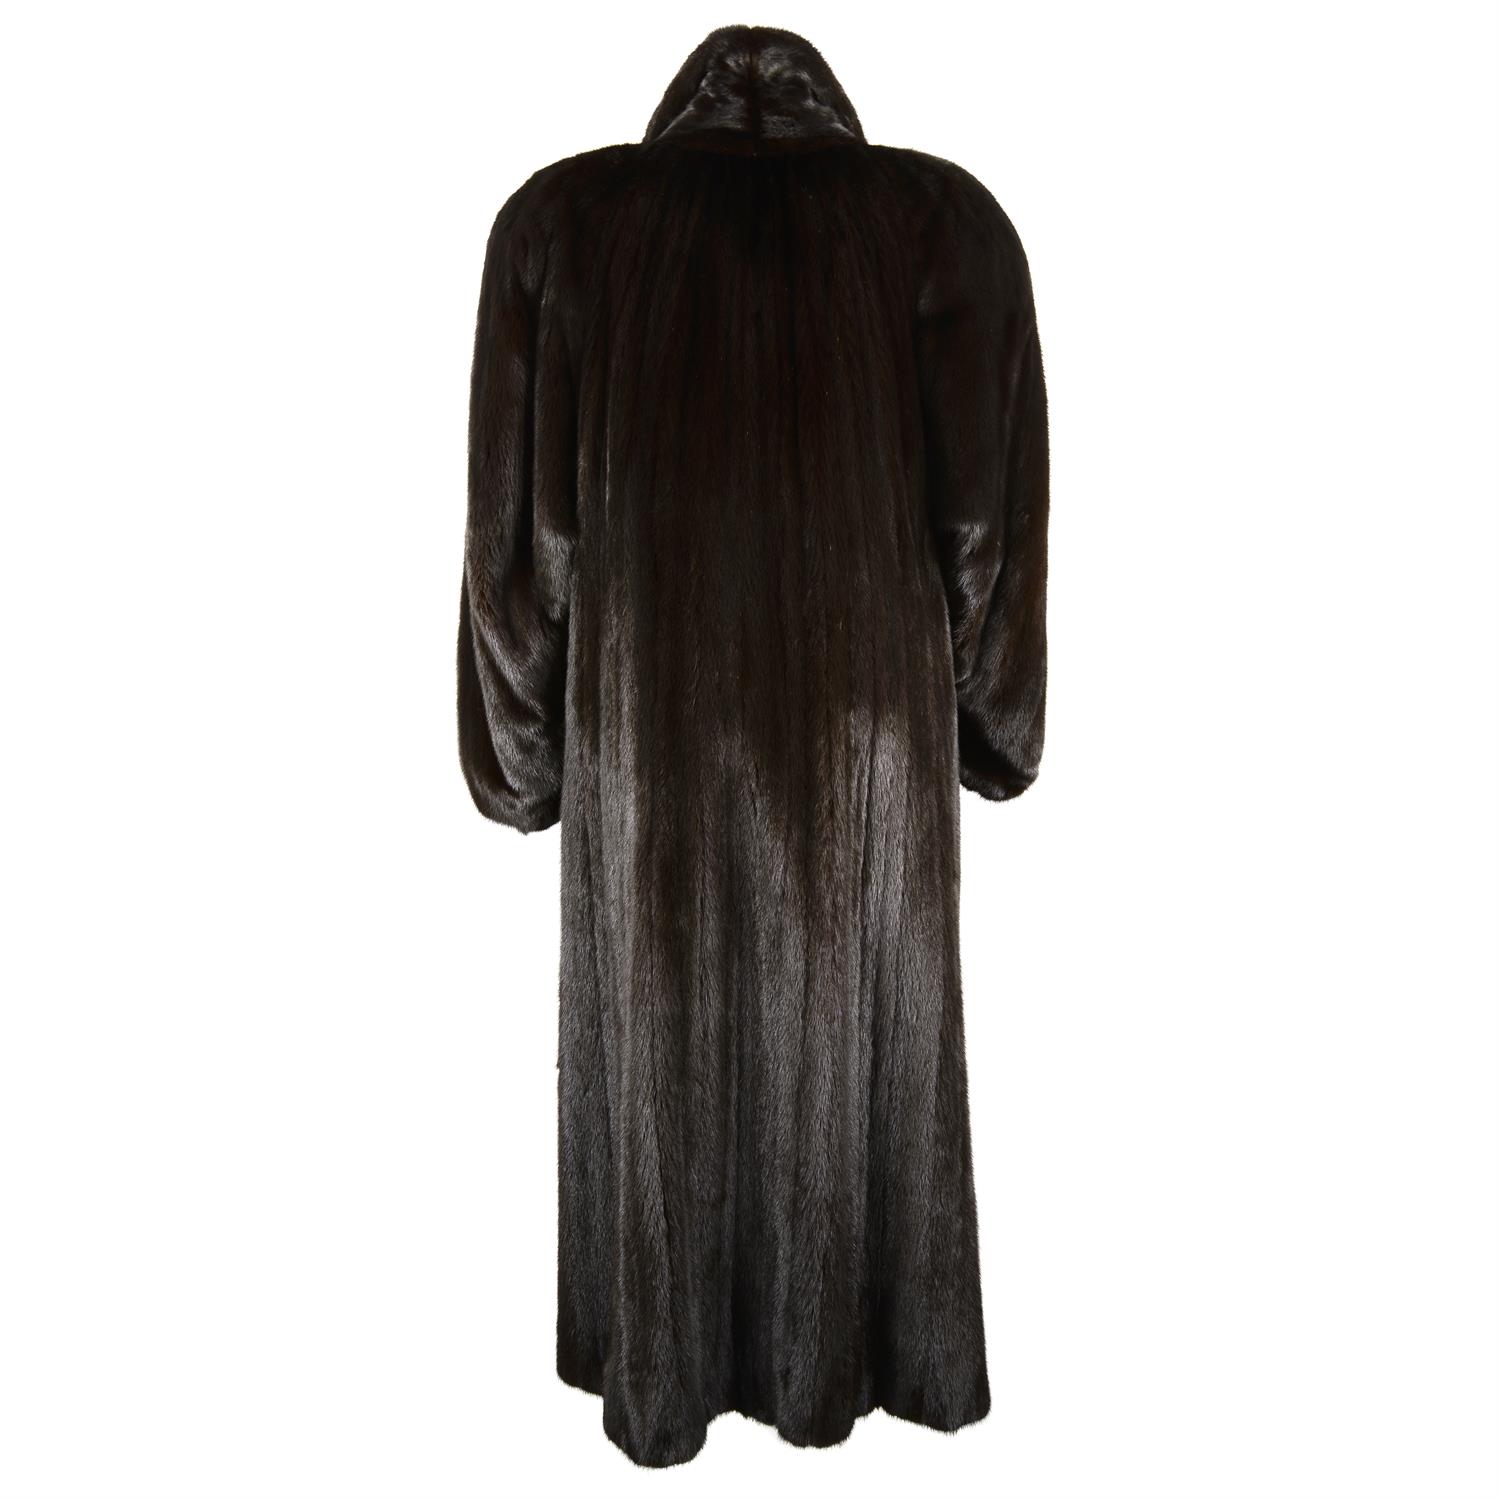 HARRODS & GROSVENOR – a dark brown full length Mink coat. - Image 2 of 3